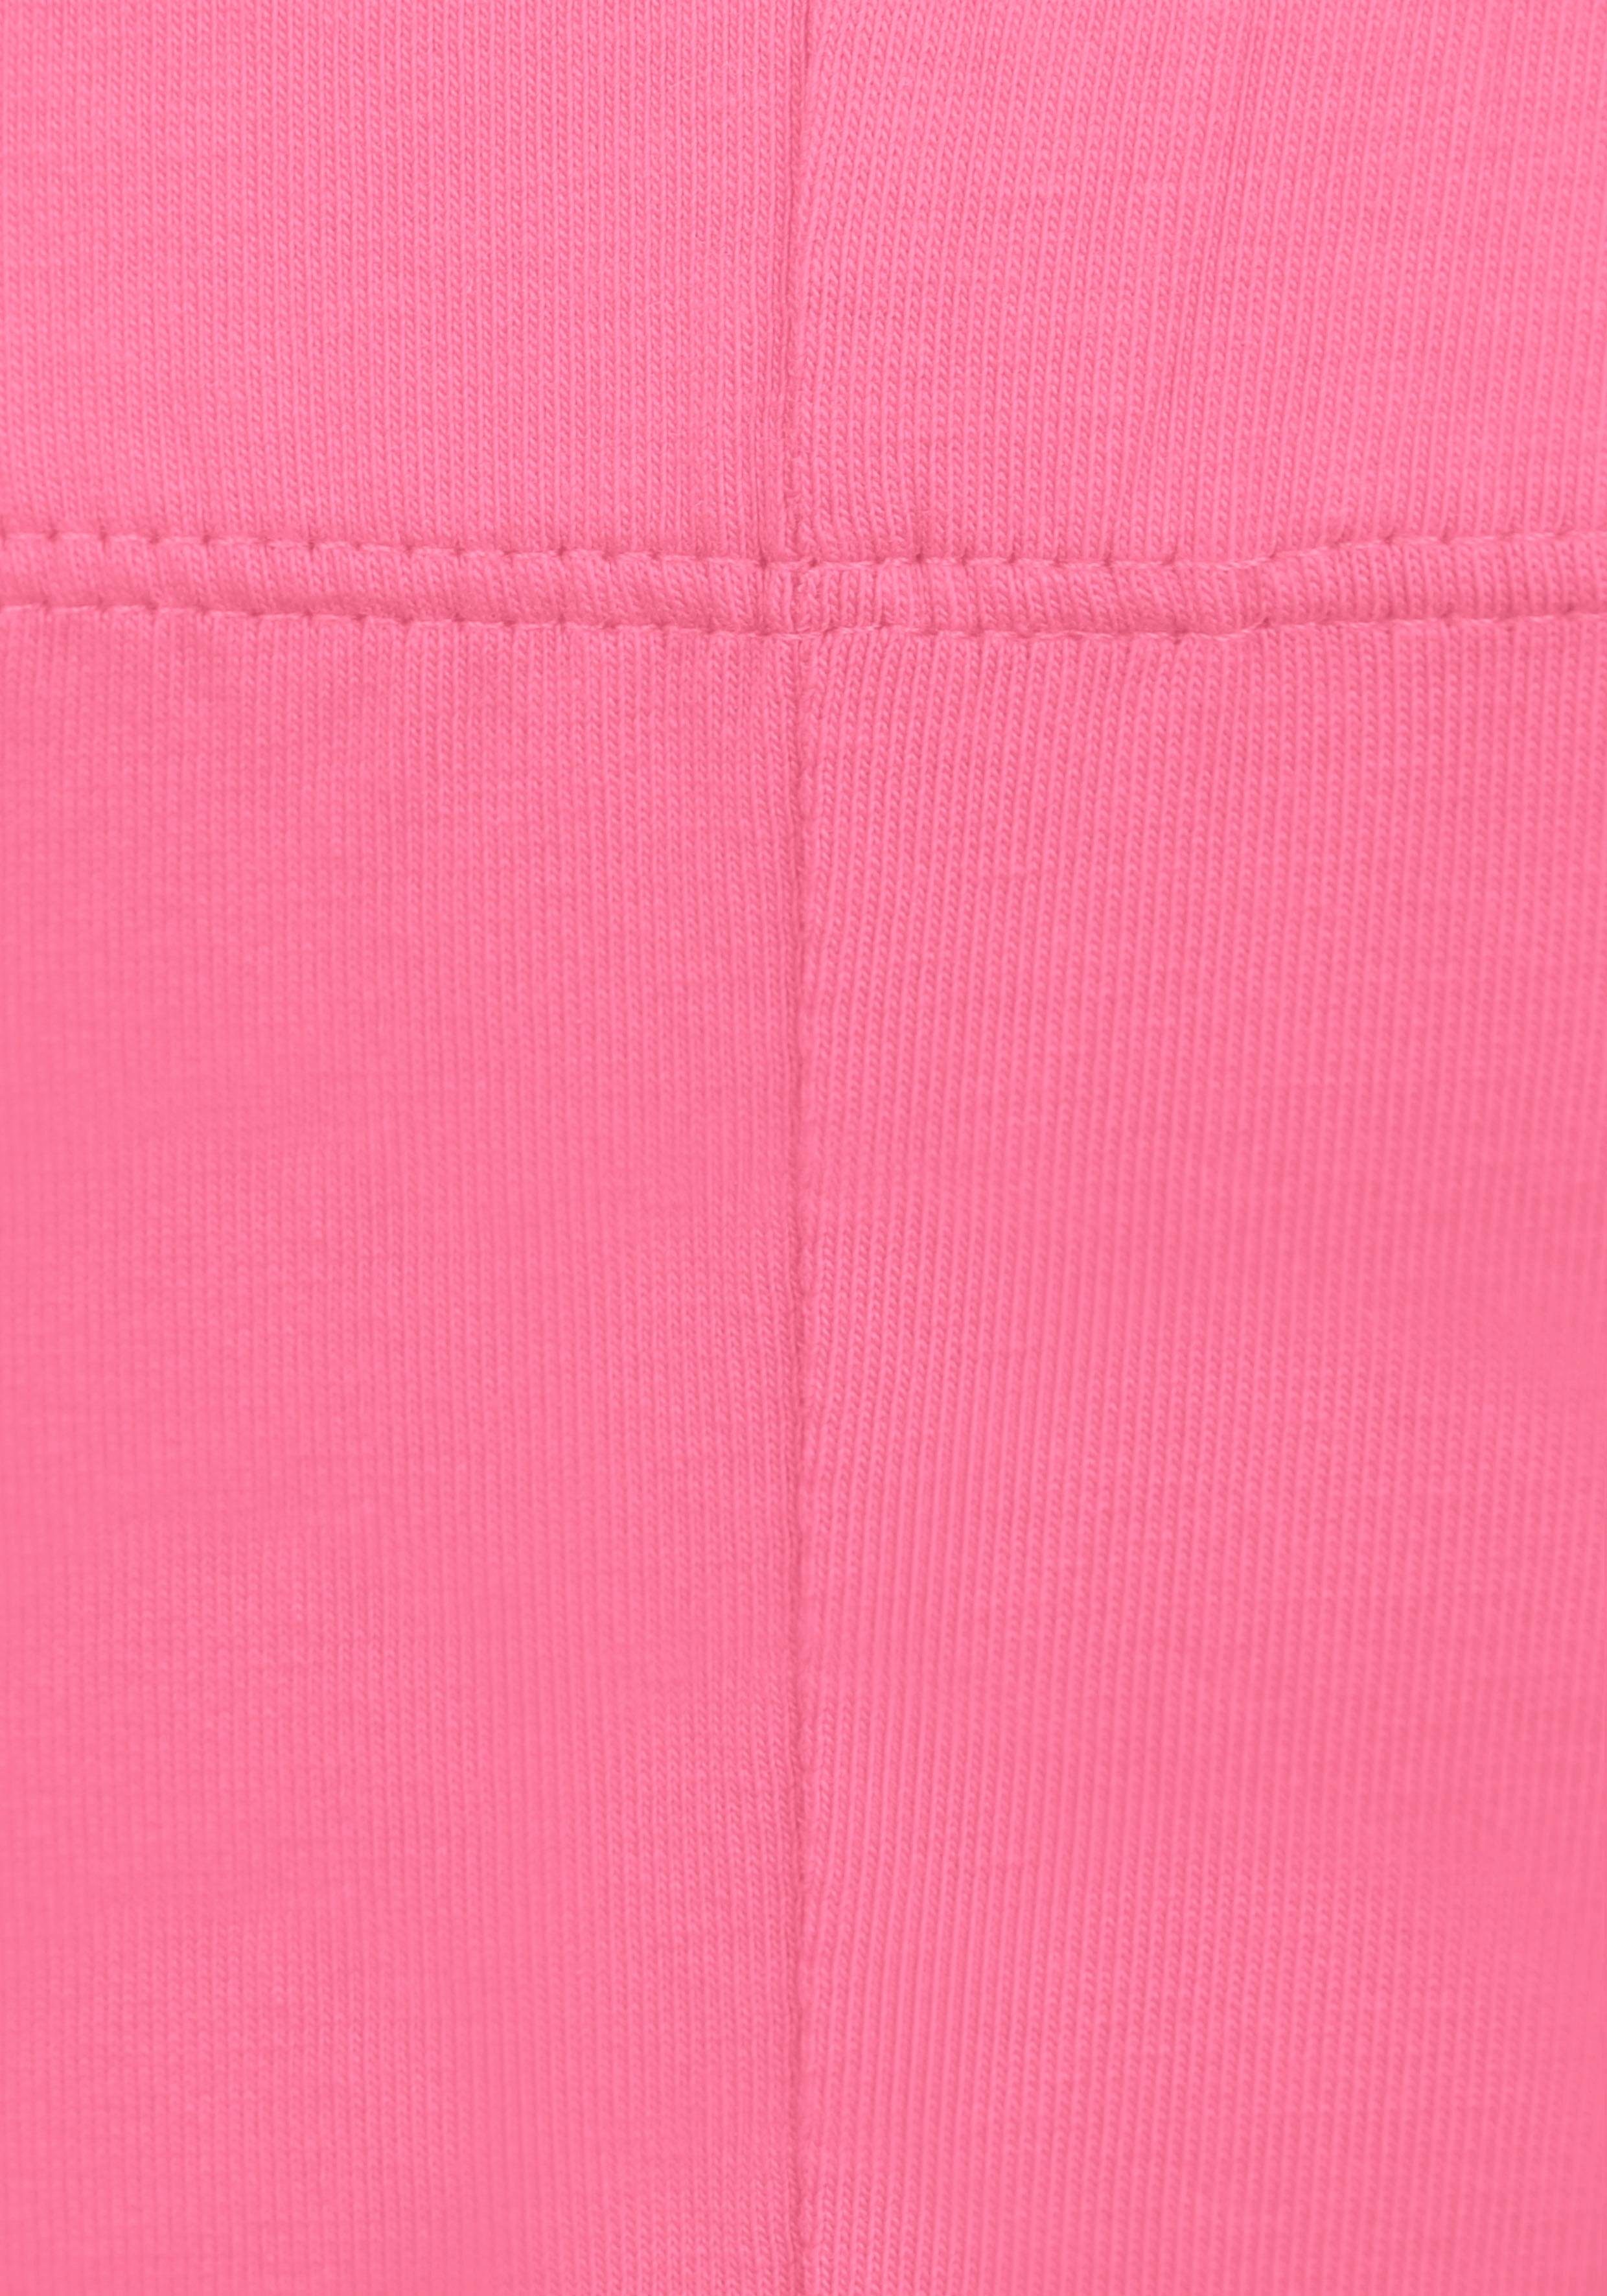 KIDSWORLD Leggings (2er-Pack) in Länge weiß 3/4 rosa